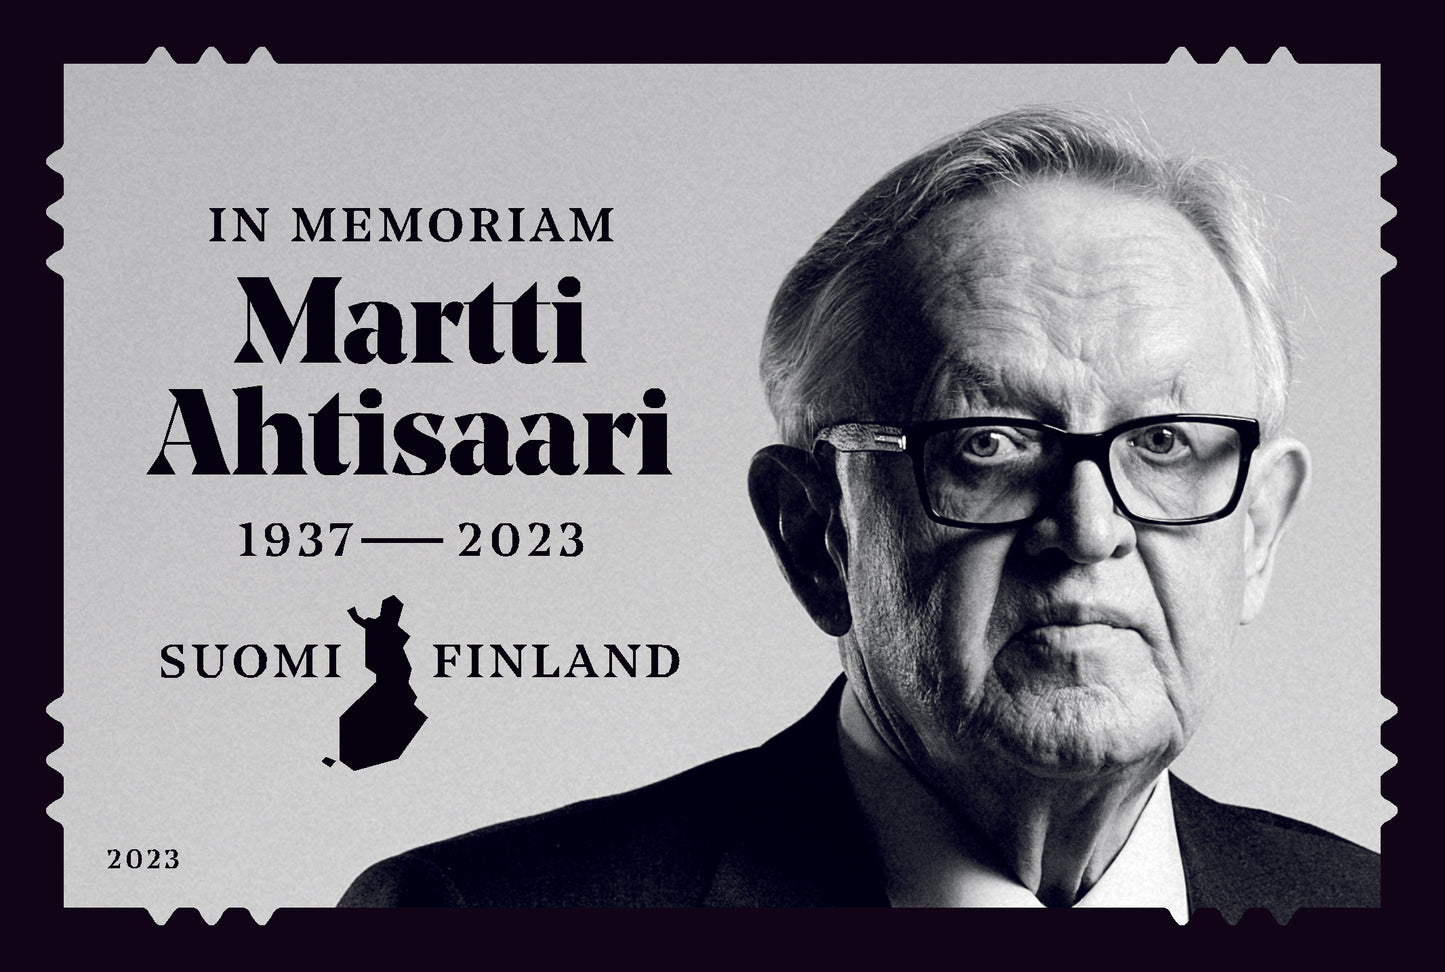 Martti Ahtisaari -cancelled